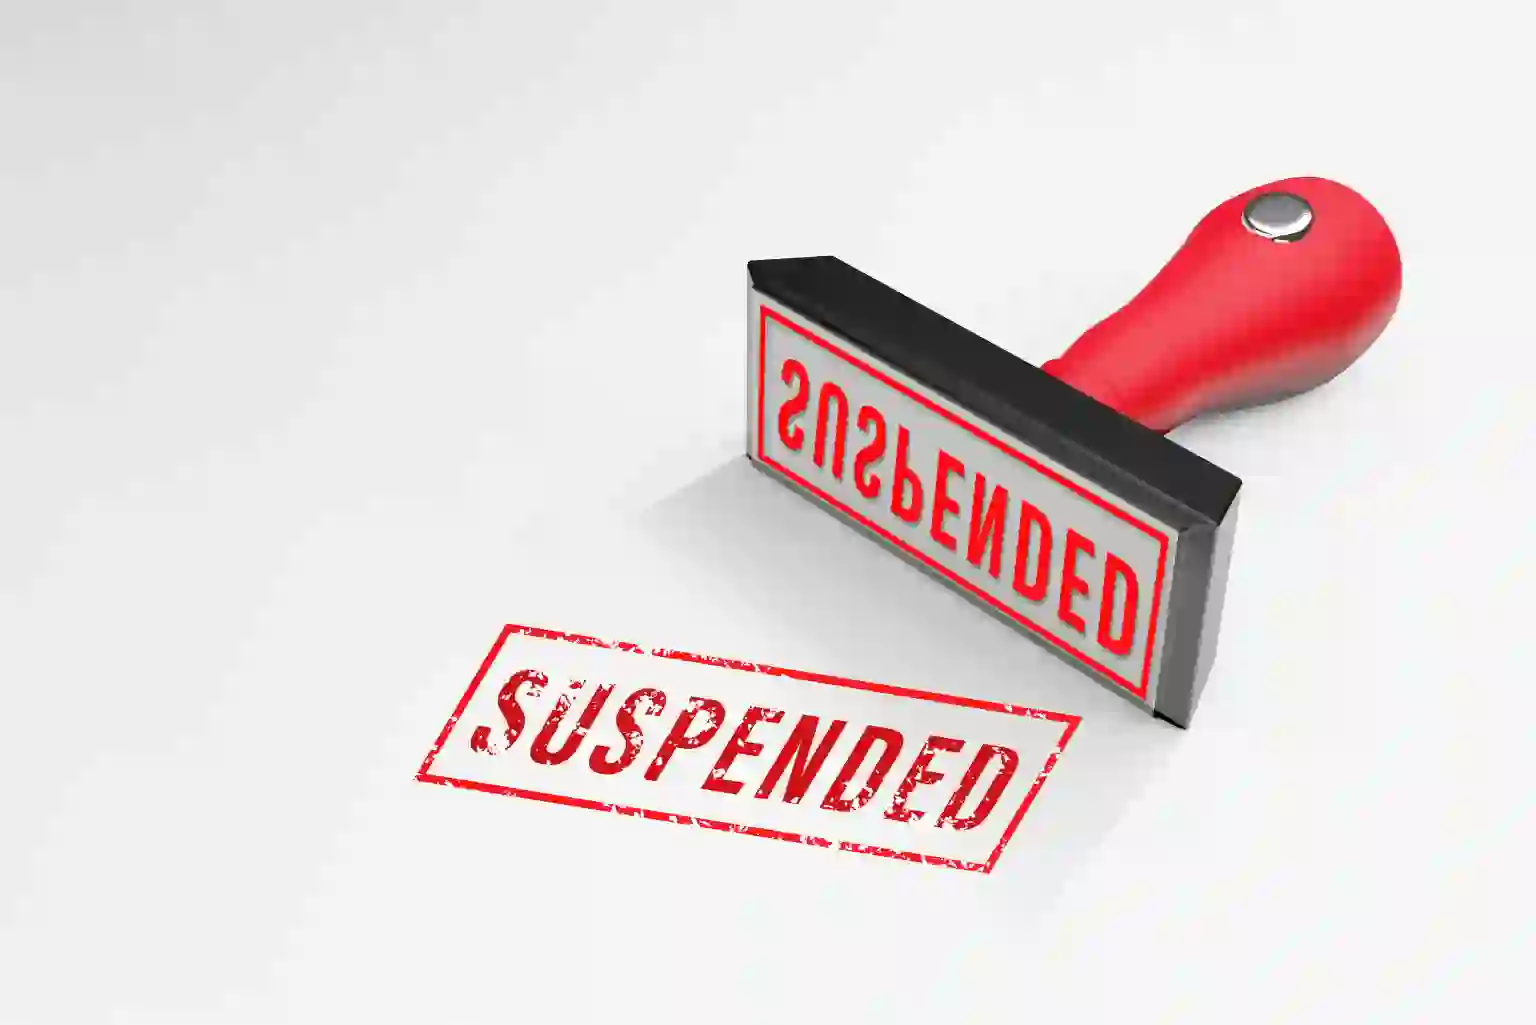 Beli followers dapat menyebabkan akun di suspend oleh pihak yang berwenang.